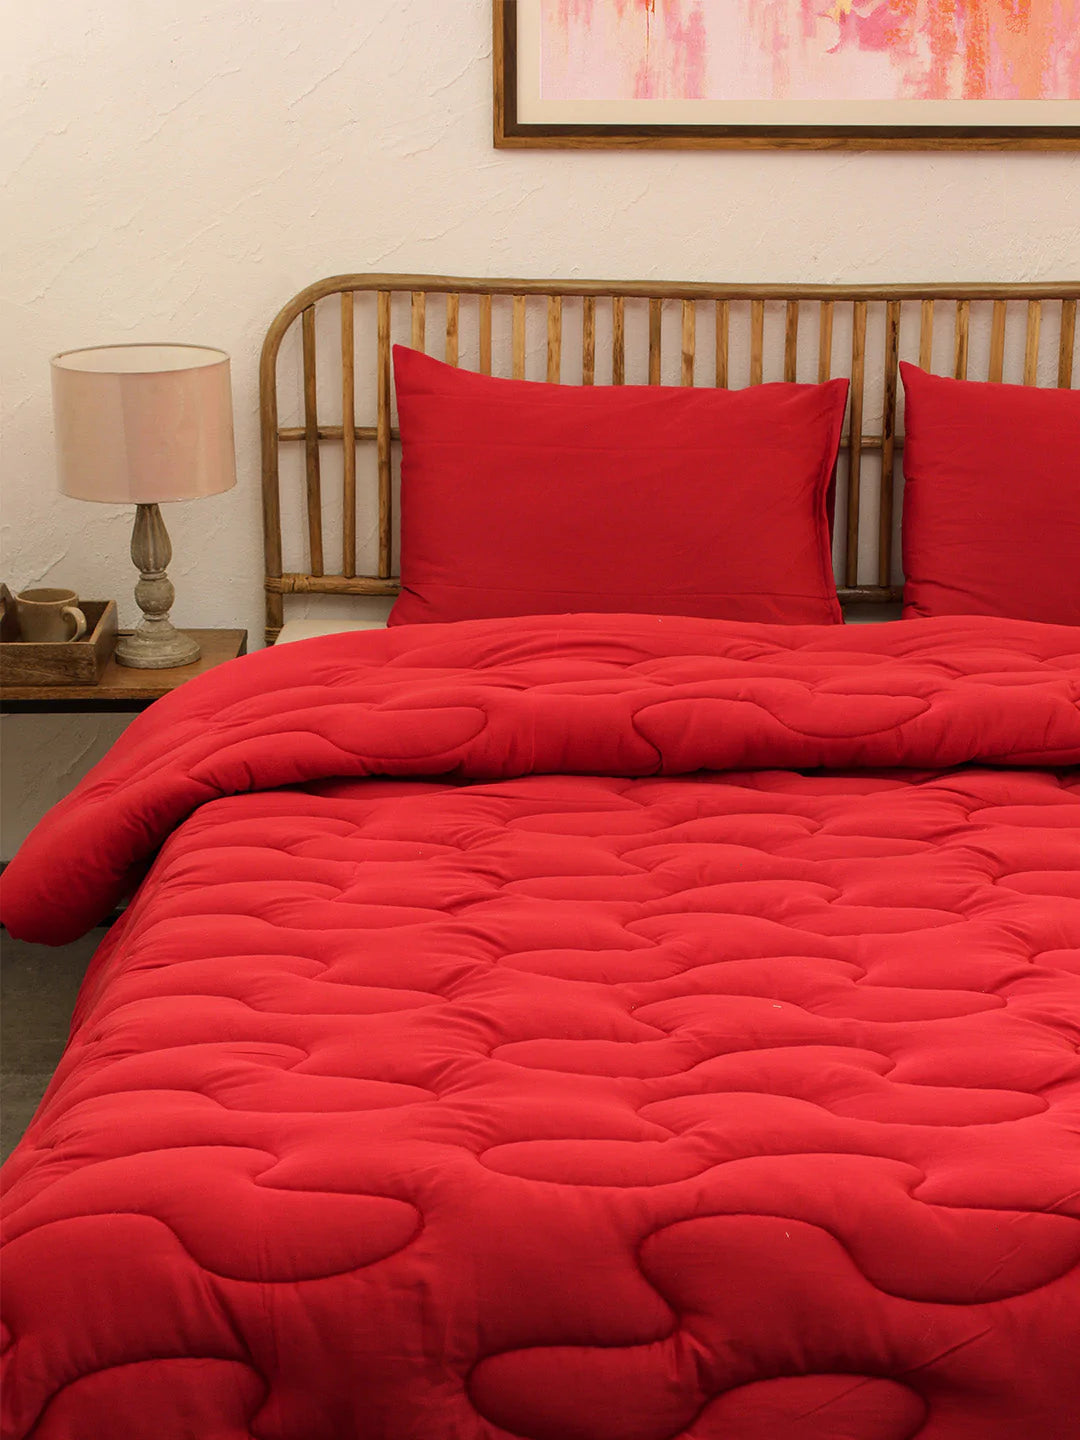 Rugmini Red Comforter